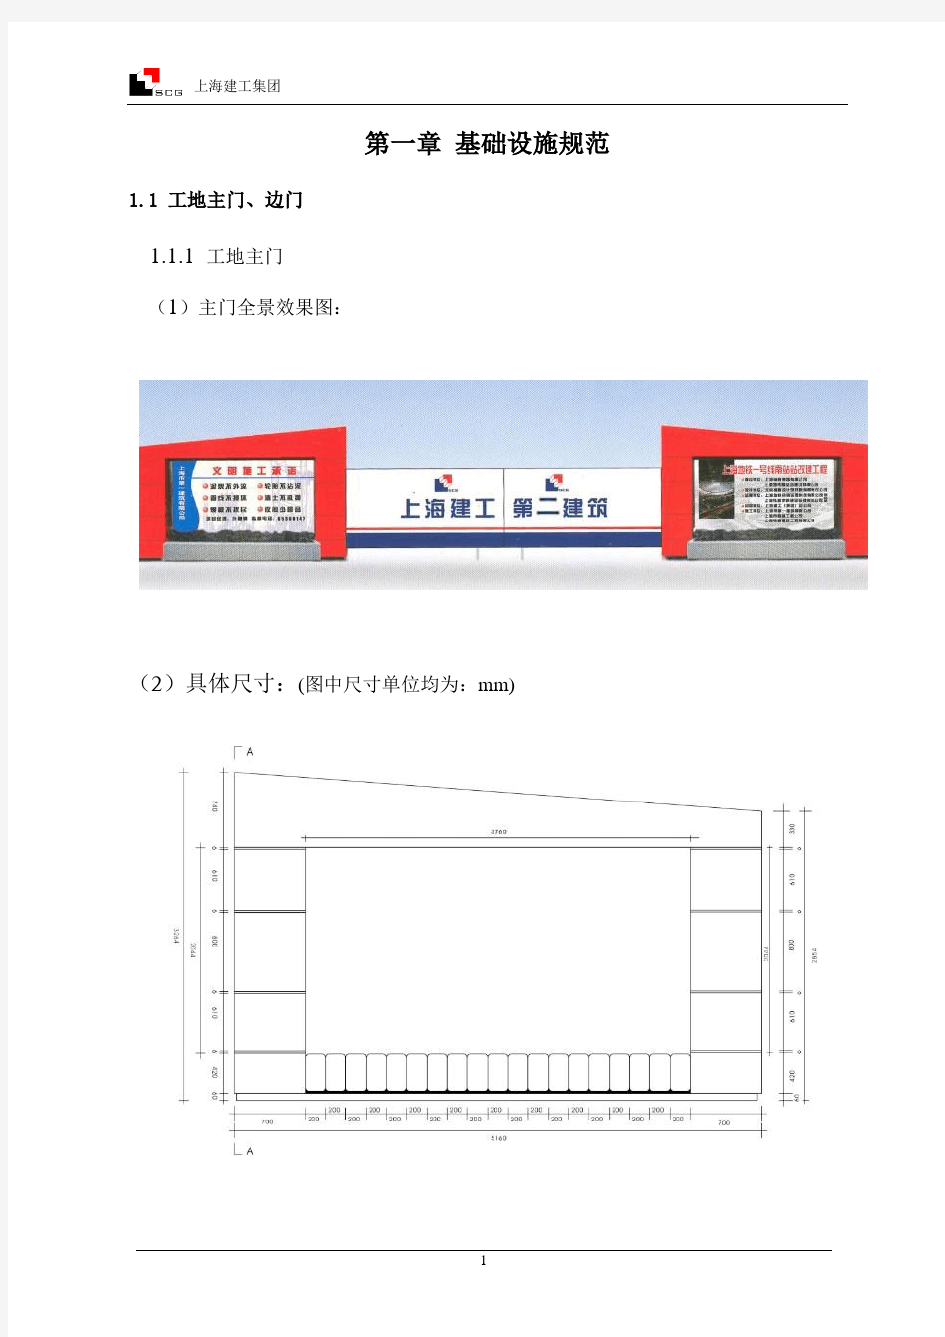 上海建工集团视觉系统施工现场文明标准化